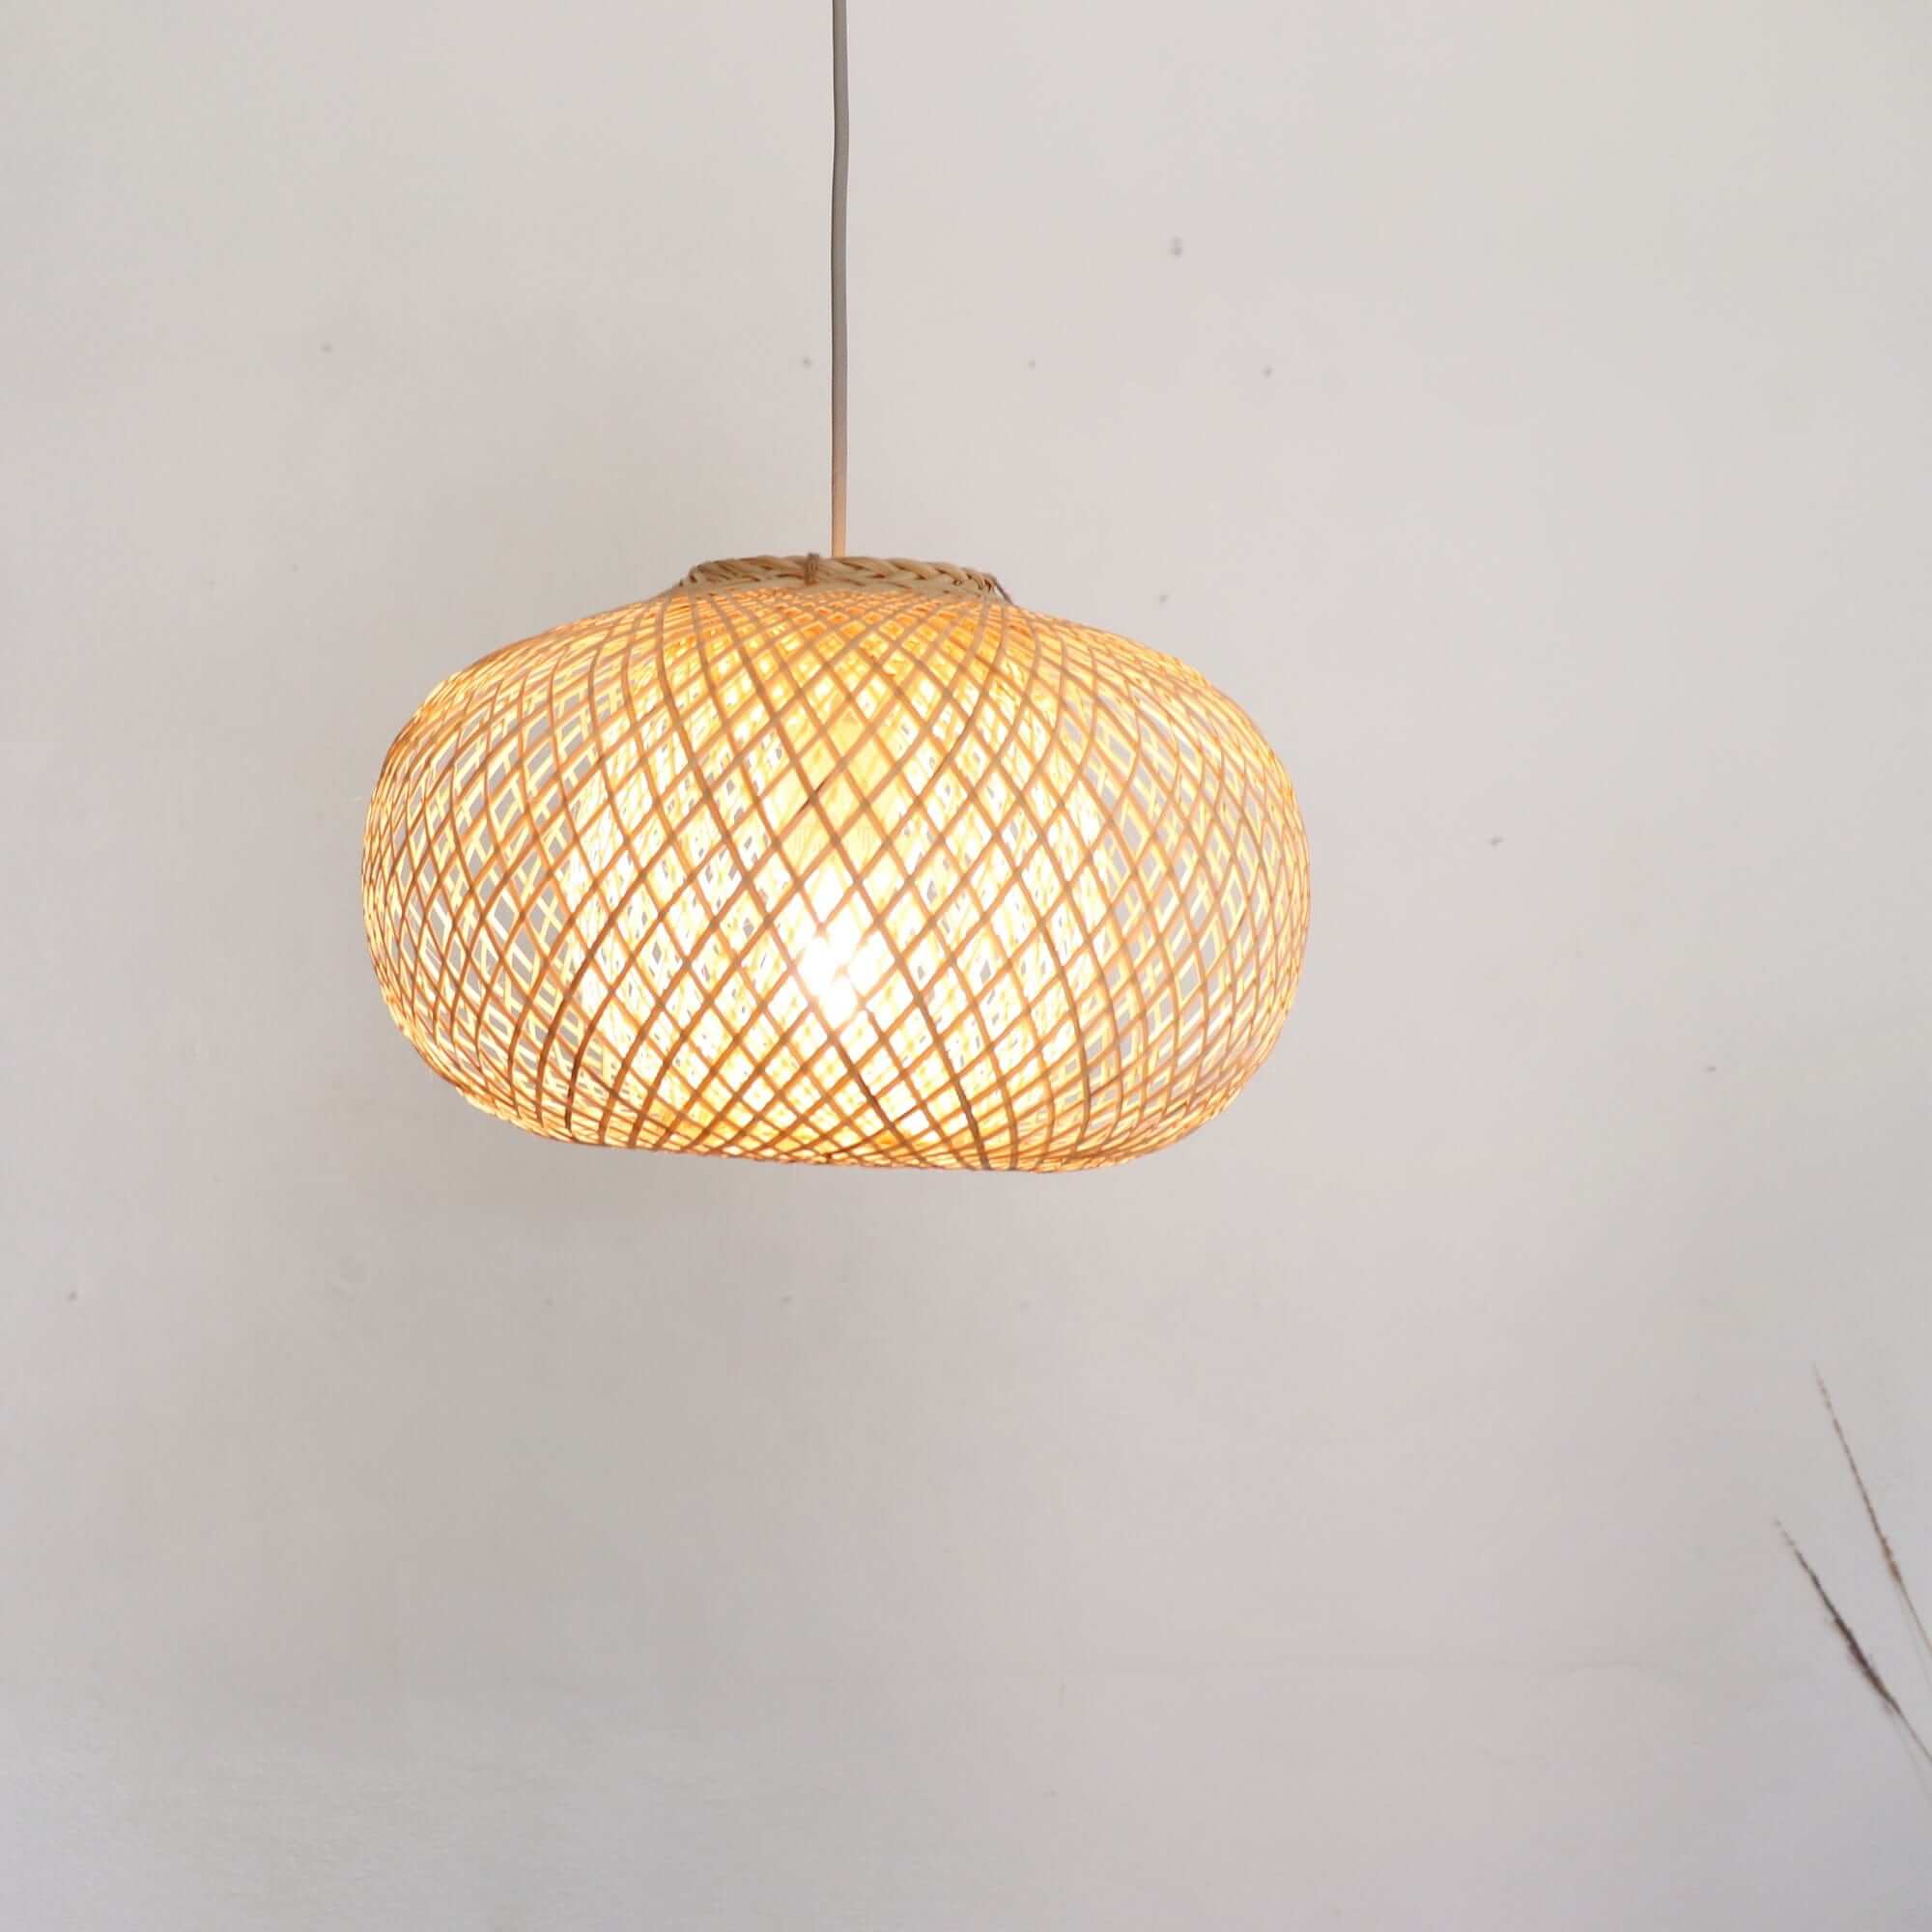 A WA - Bamboo Pendant Light